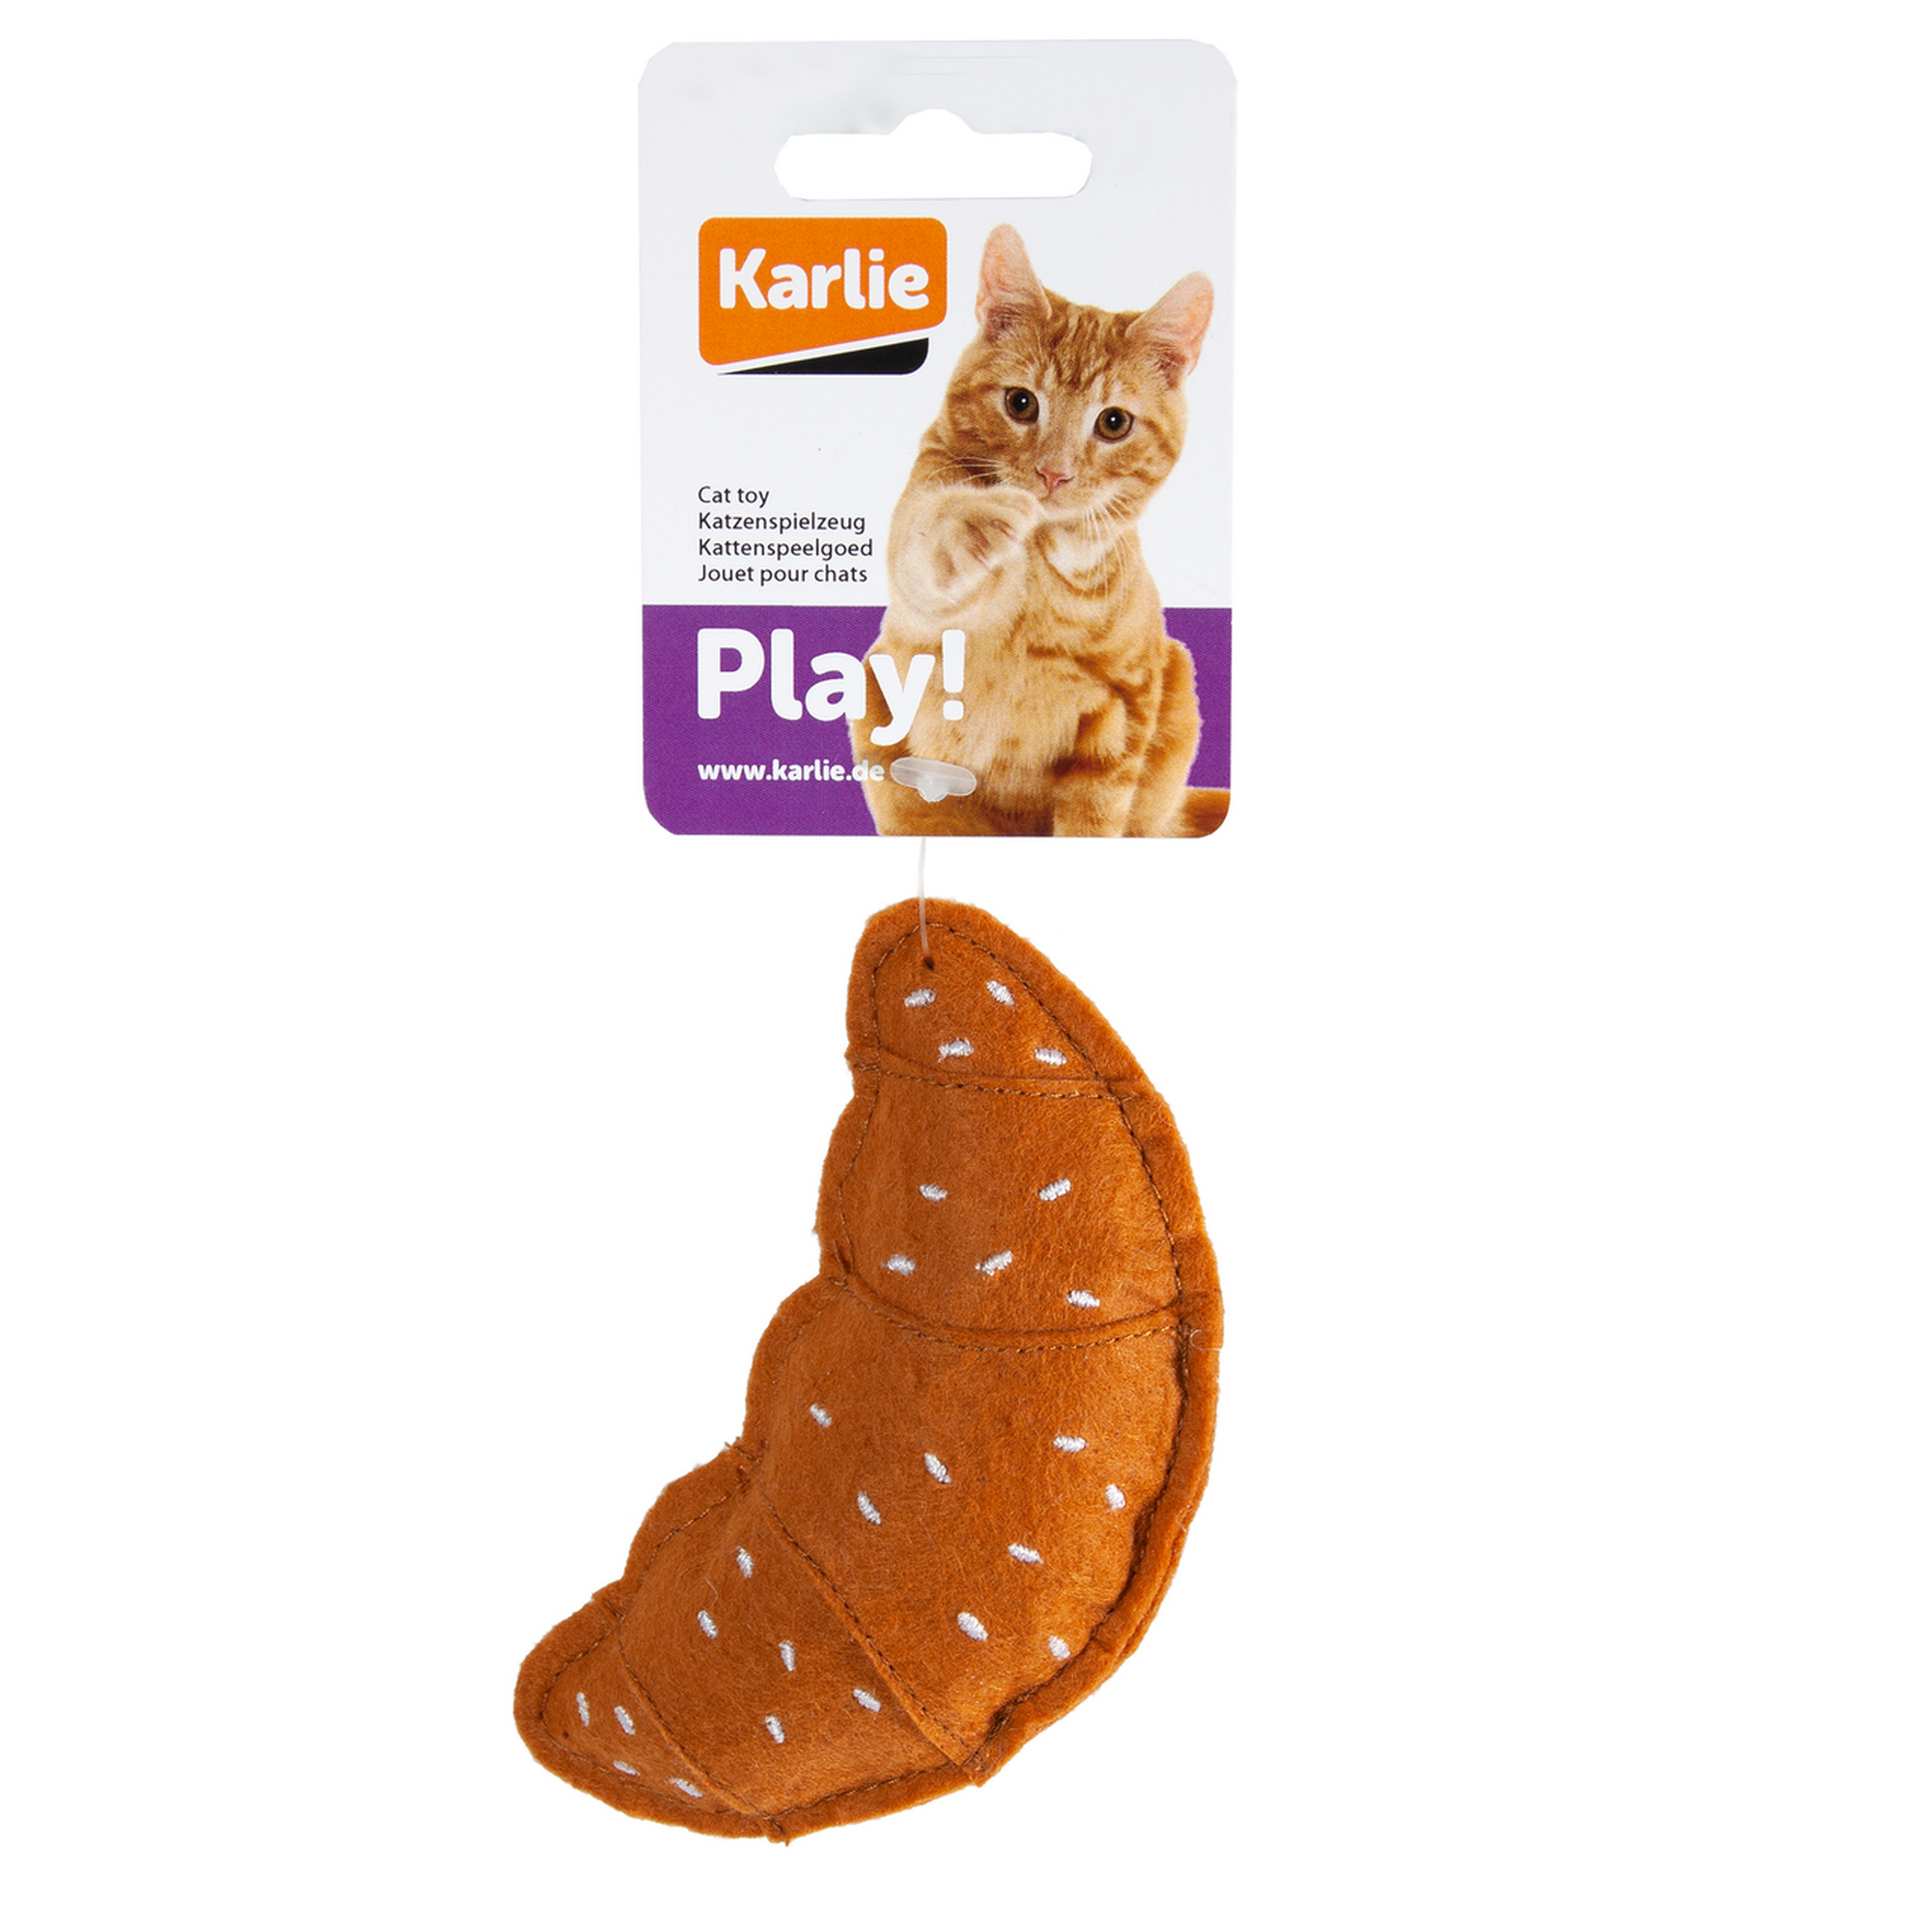 Katzenspielzeug Texil Croissant braun mit Catnip 10,5 cm + product picture